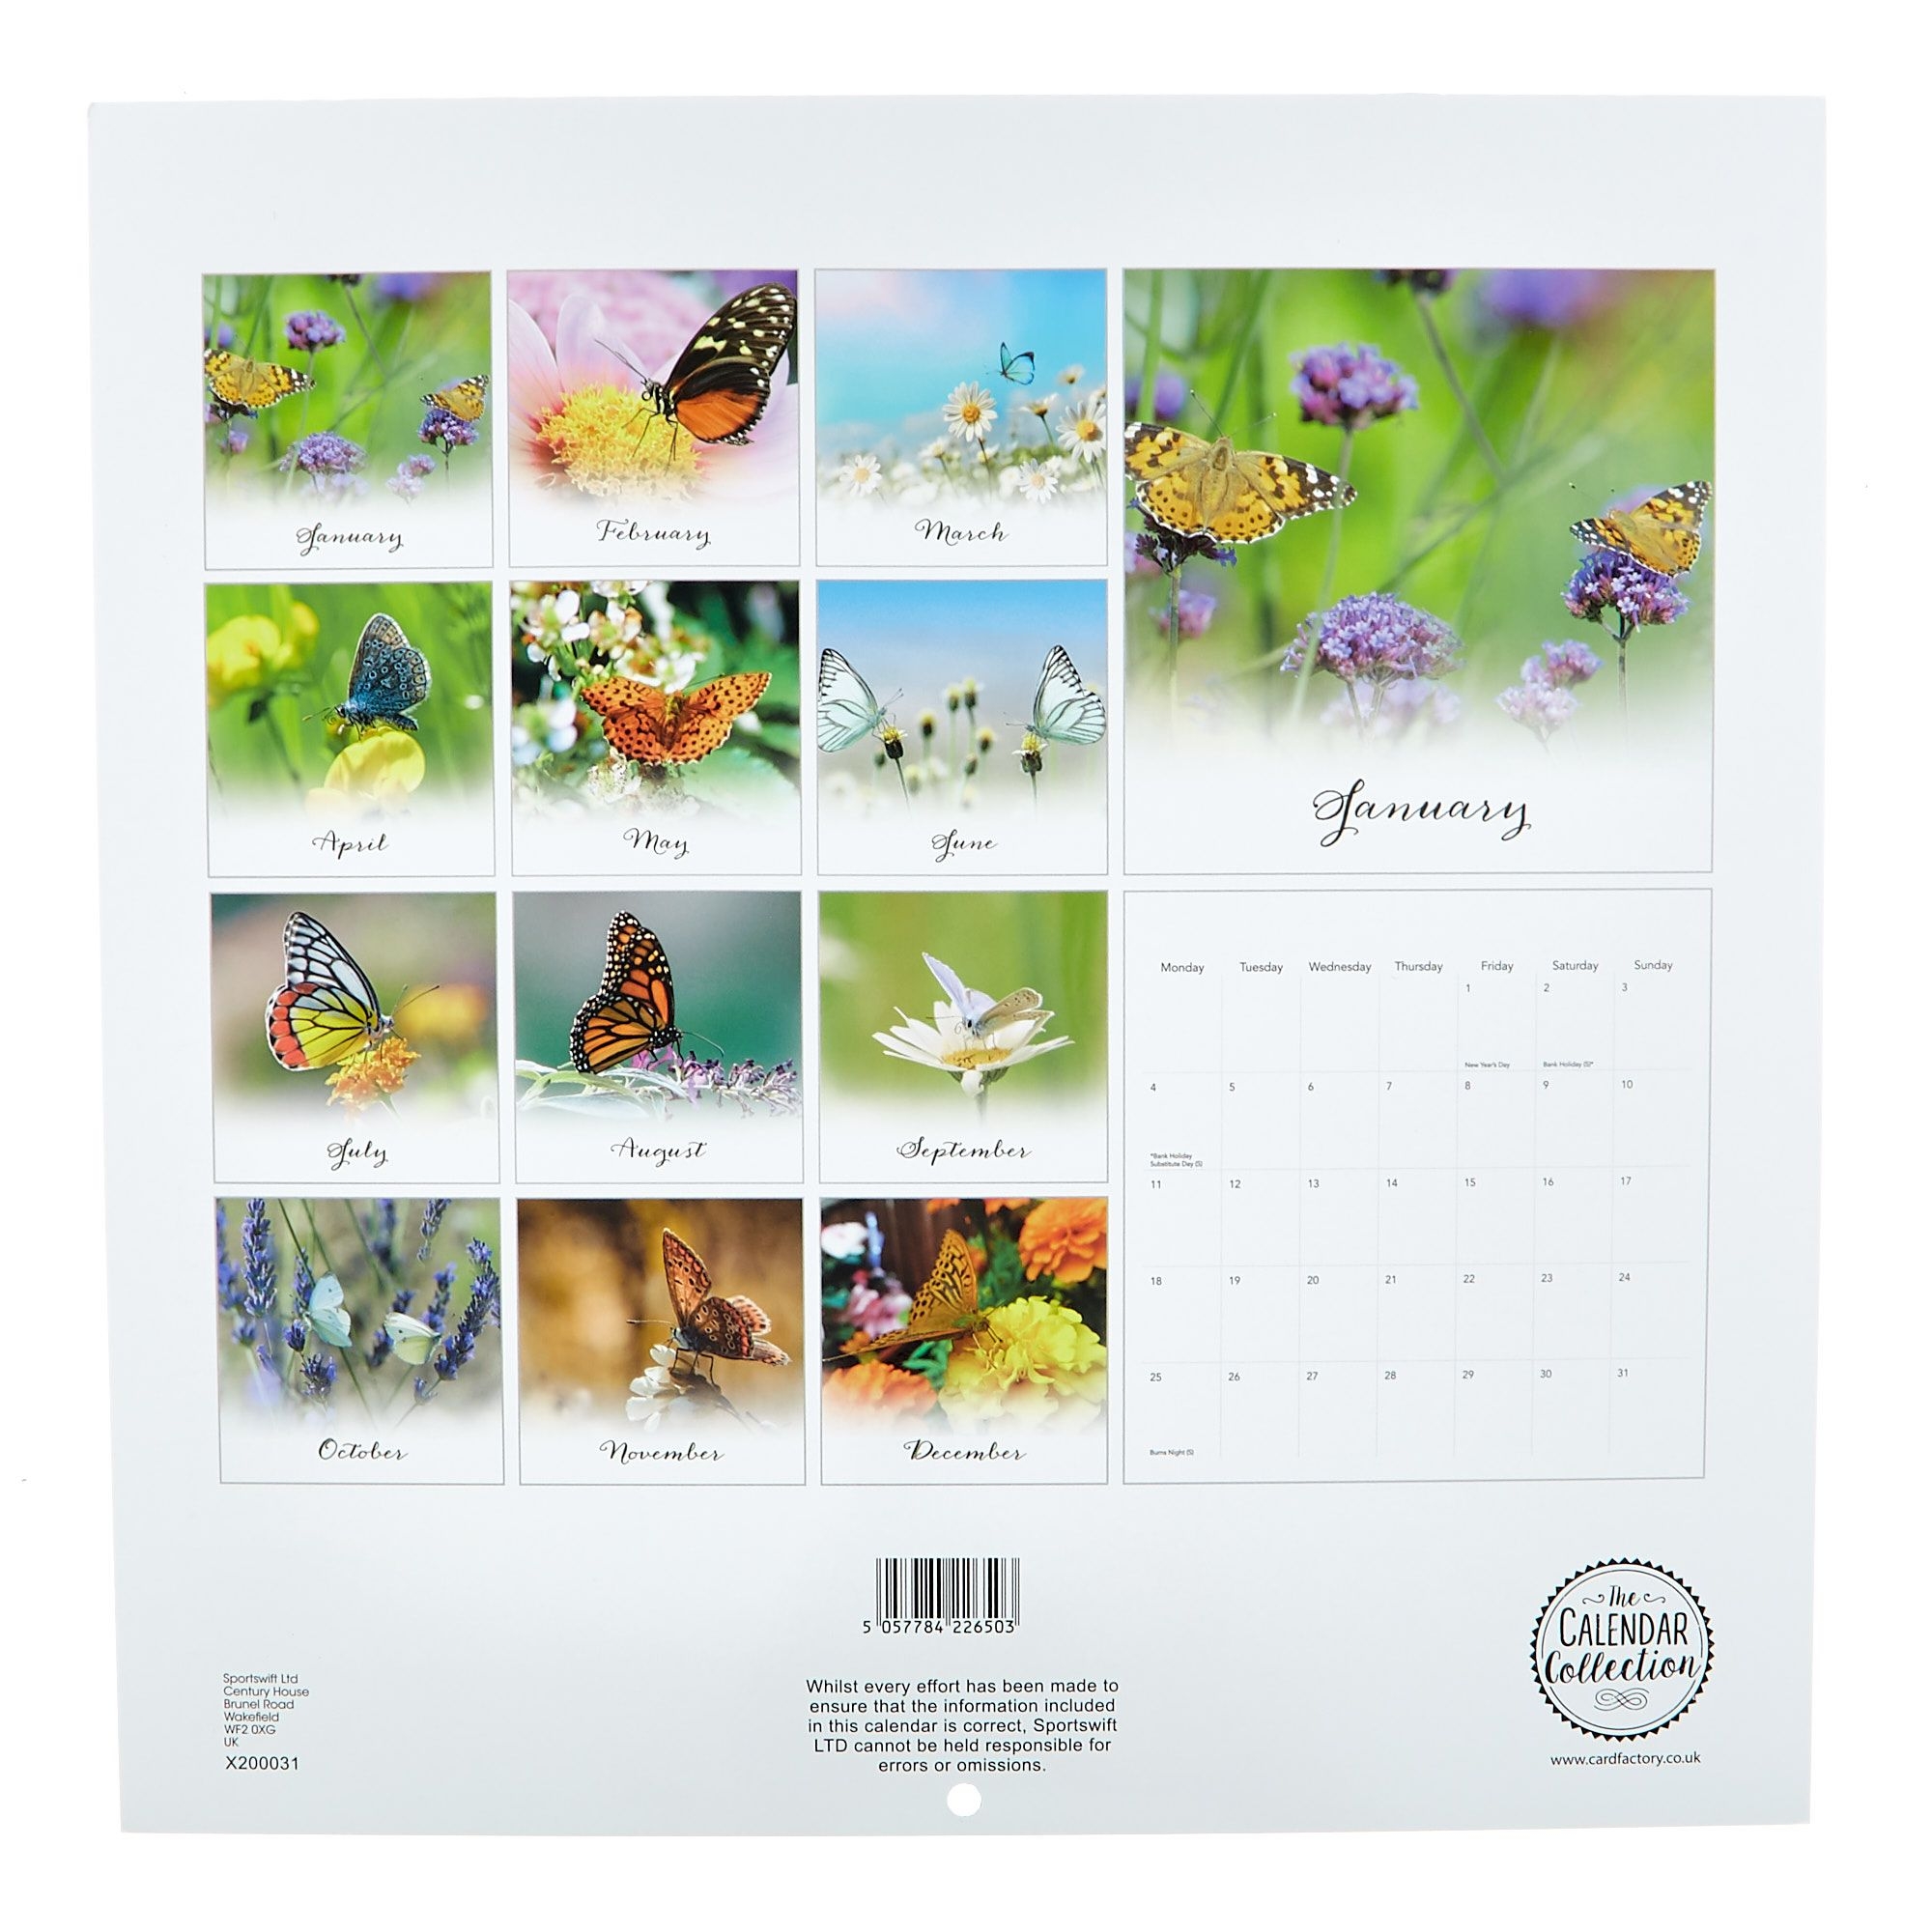 Buy Butterflies 2021 Calendar For Gbp 1.99 | Card Factory Uk